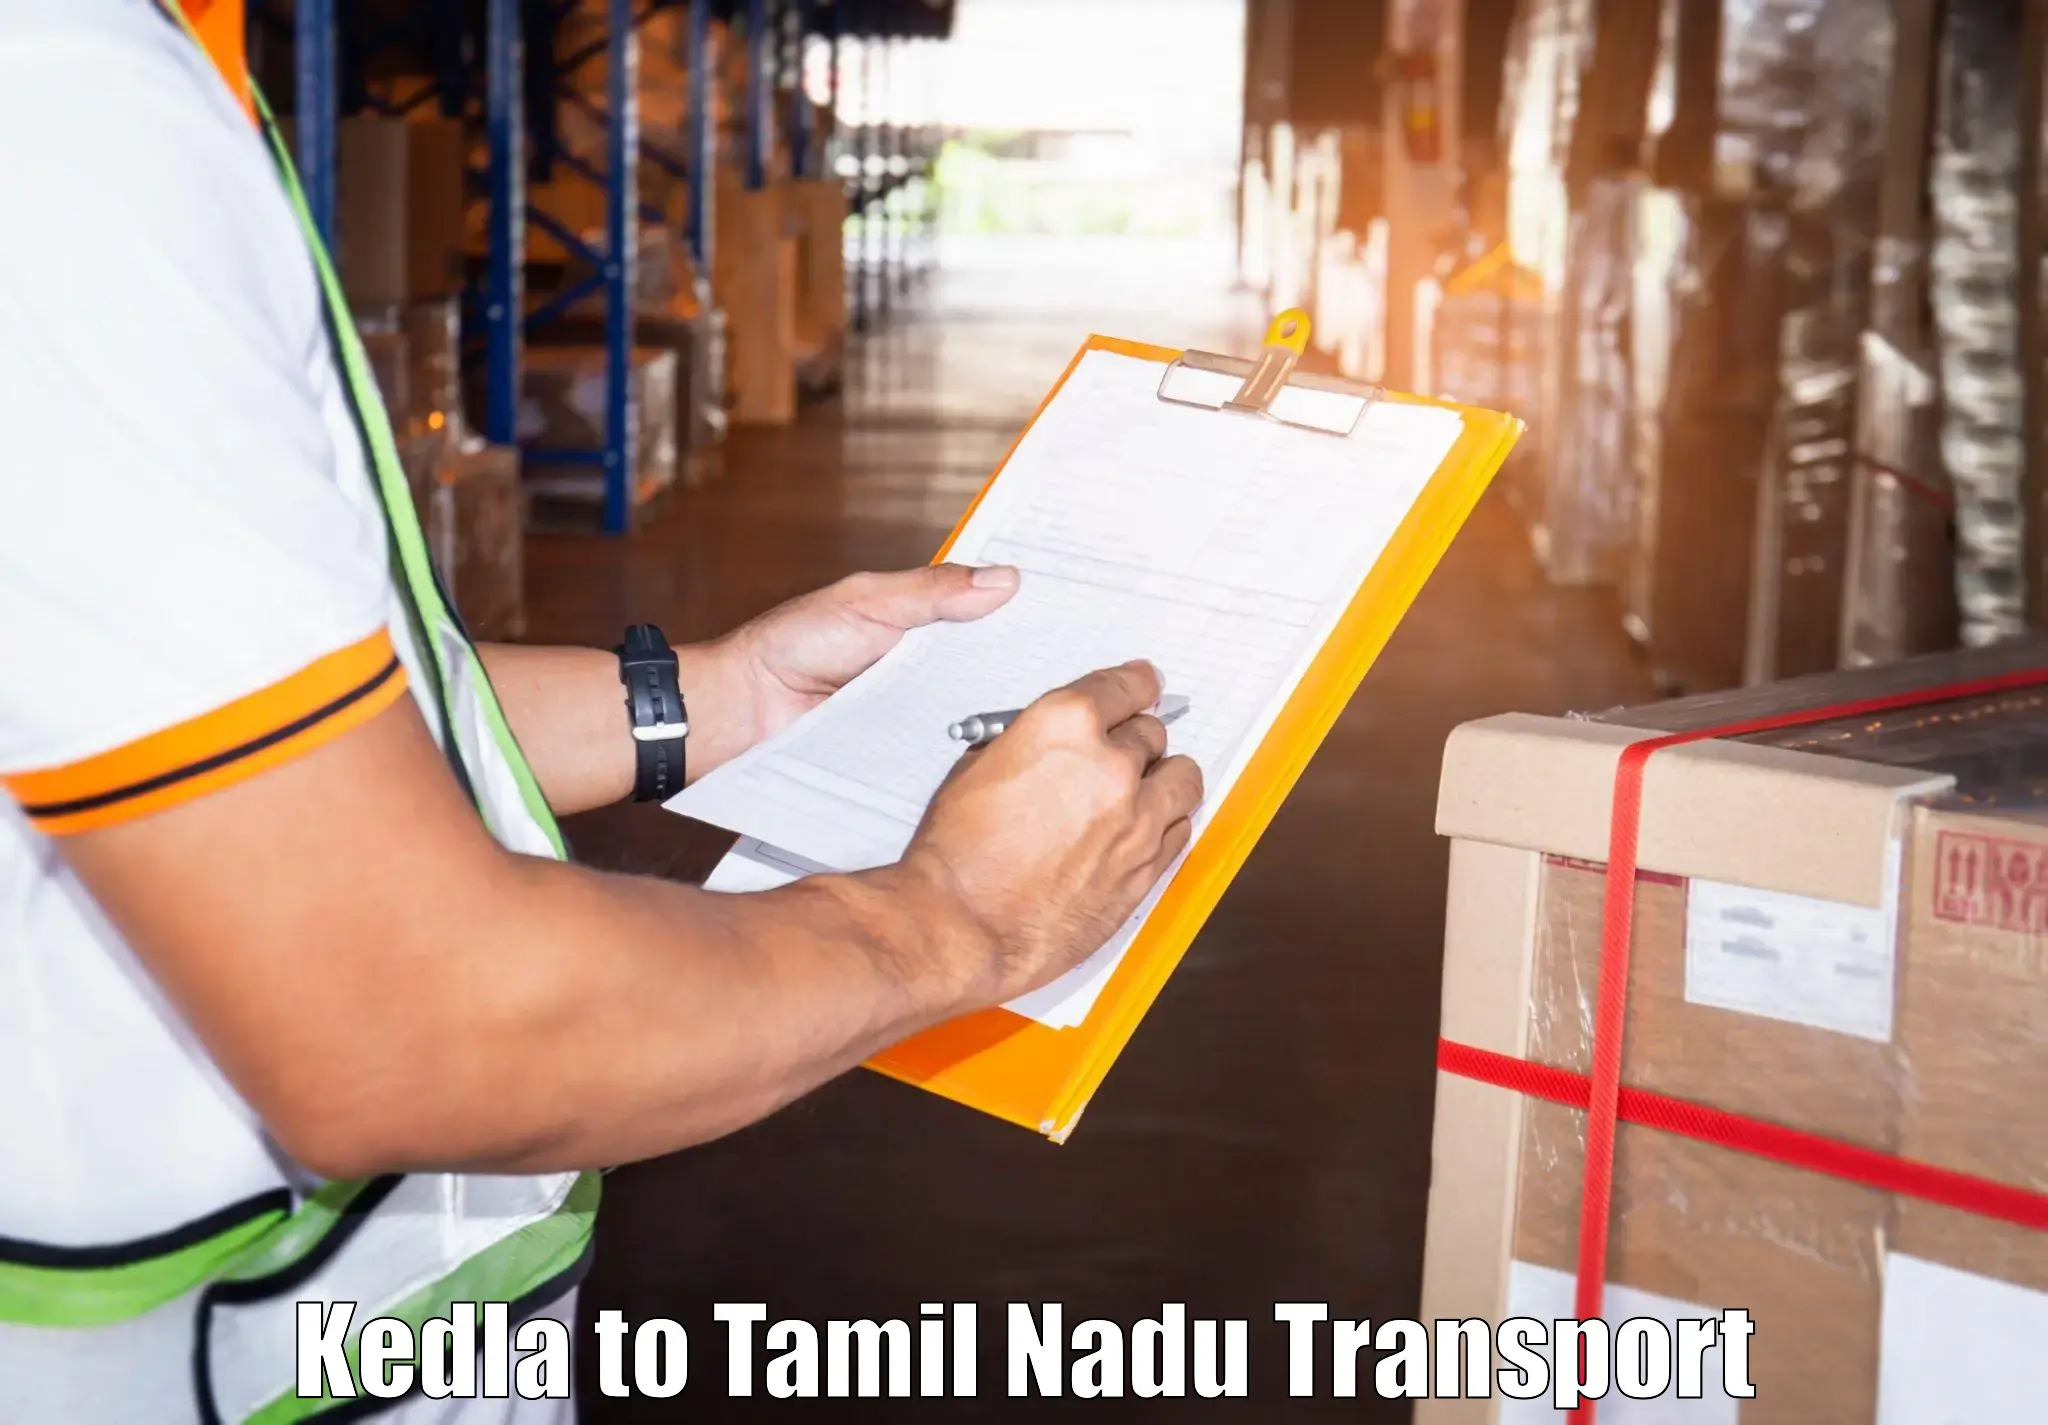 Transportation services Kedla to Srivaikuntam